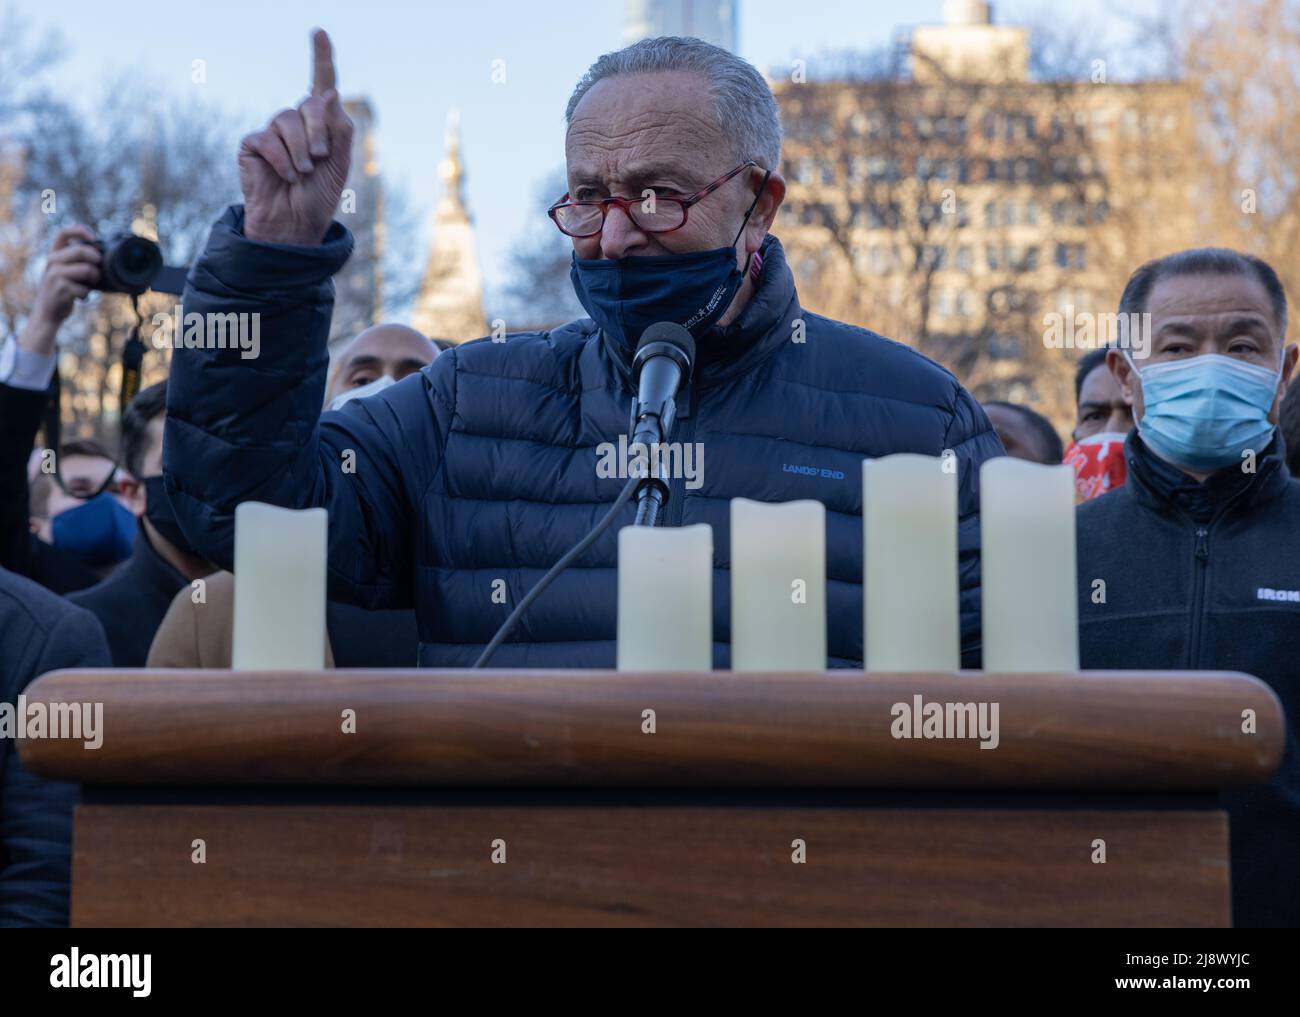 NEW YORK, N.Y. – 19 marzo 2021: Chuck Schumer, leader della maggioranza del Senato degli Stati Uniti, si rivolge a una veglia per le vittime della violenza anti-asiatica. Foto Stock